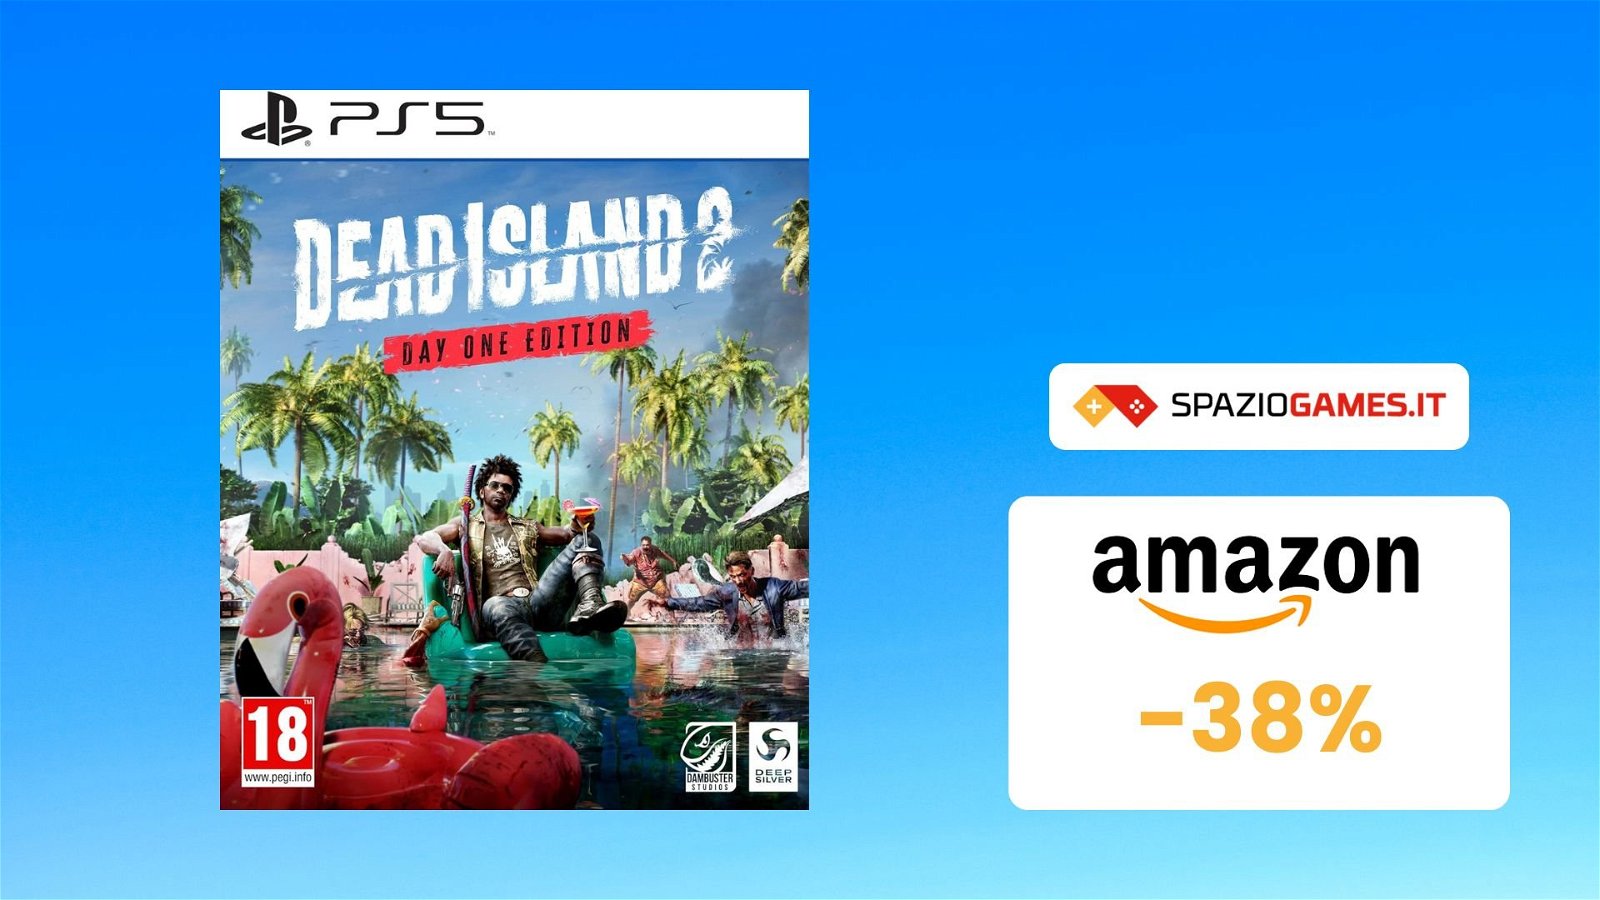 Dead Island 2 per PS5 a SOLI 30€! -38% di sconto!